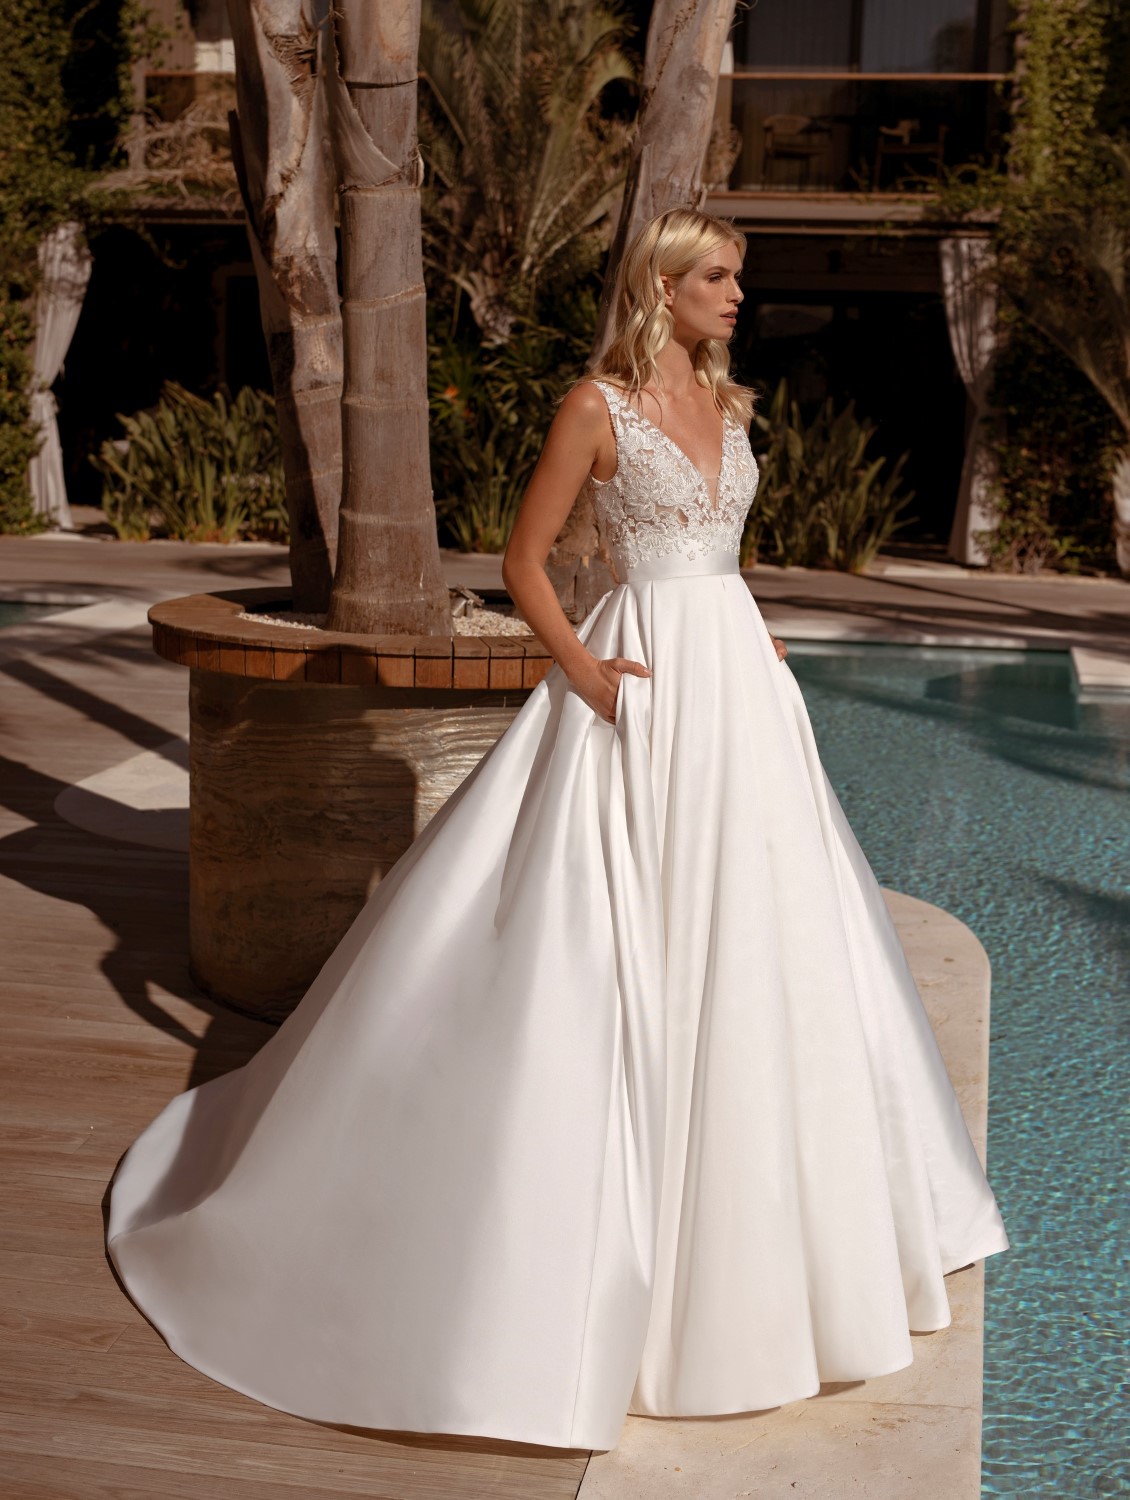 Das Bild zeigt ein weibliches Model in einem weißen Brautkleid